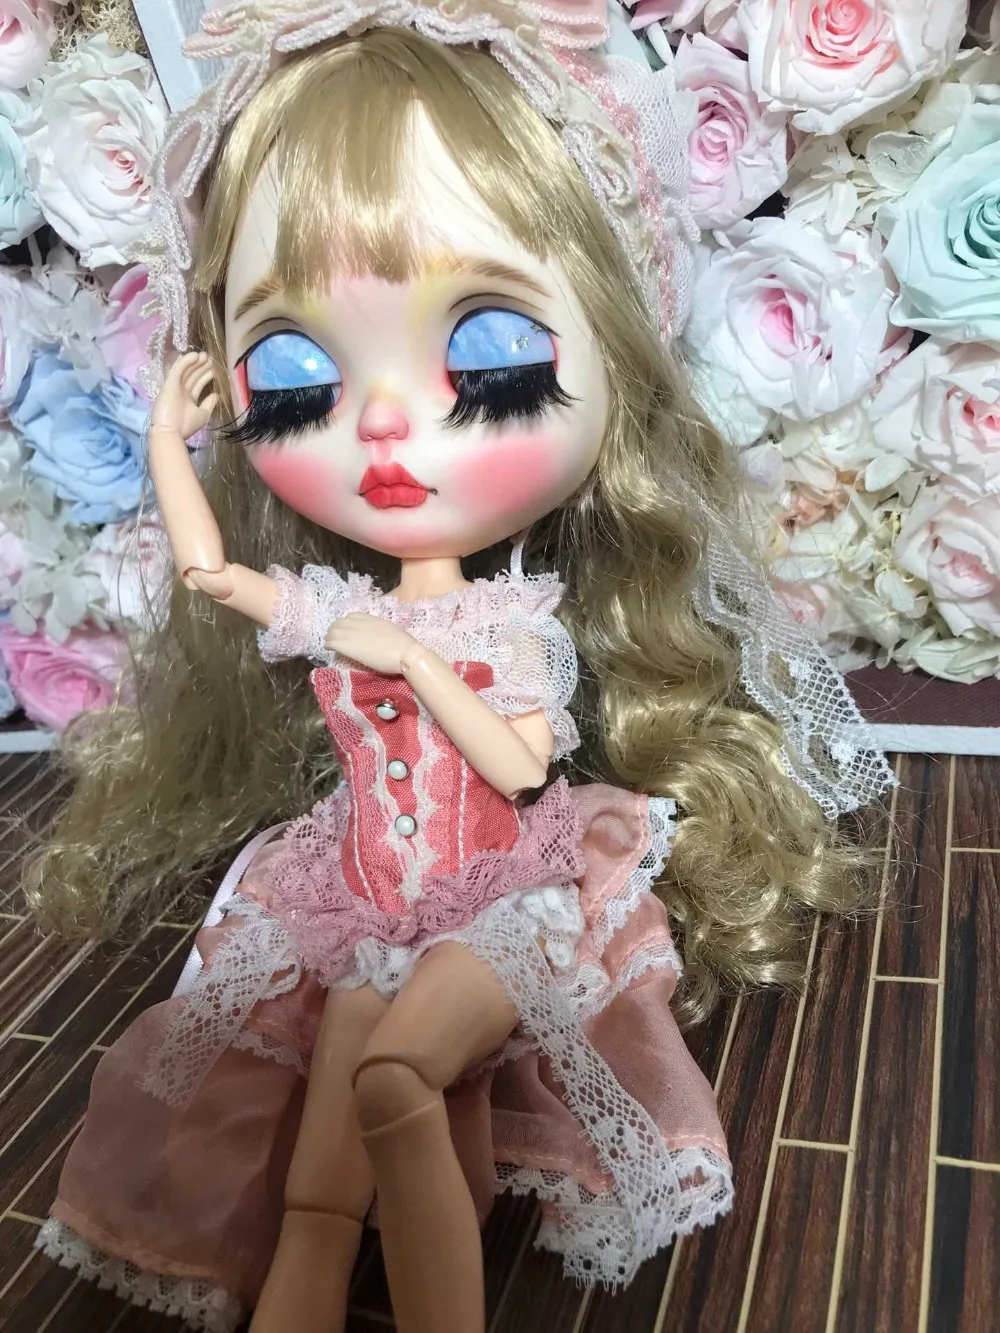 Кастомизация кукла Обнаженная blyth кукла для девочек Обнаженная кукла-0610